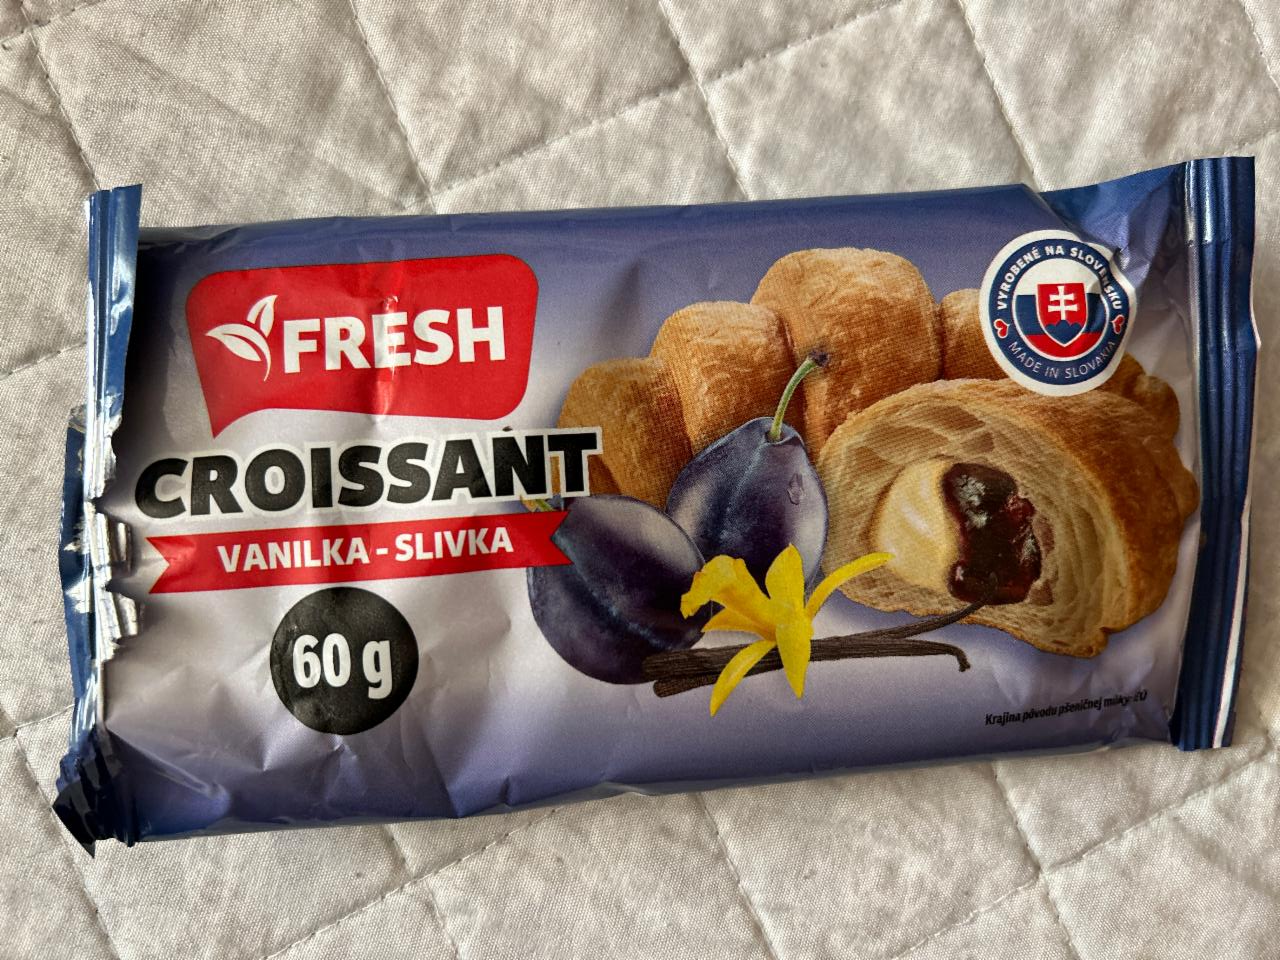 Fotografie - Croissant vanilka-slivka Fresh